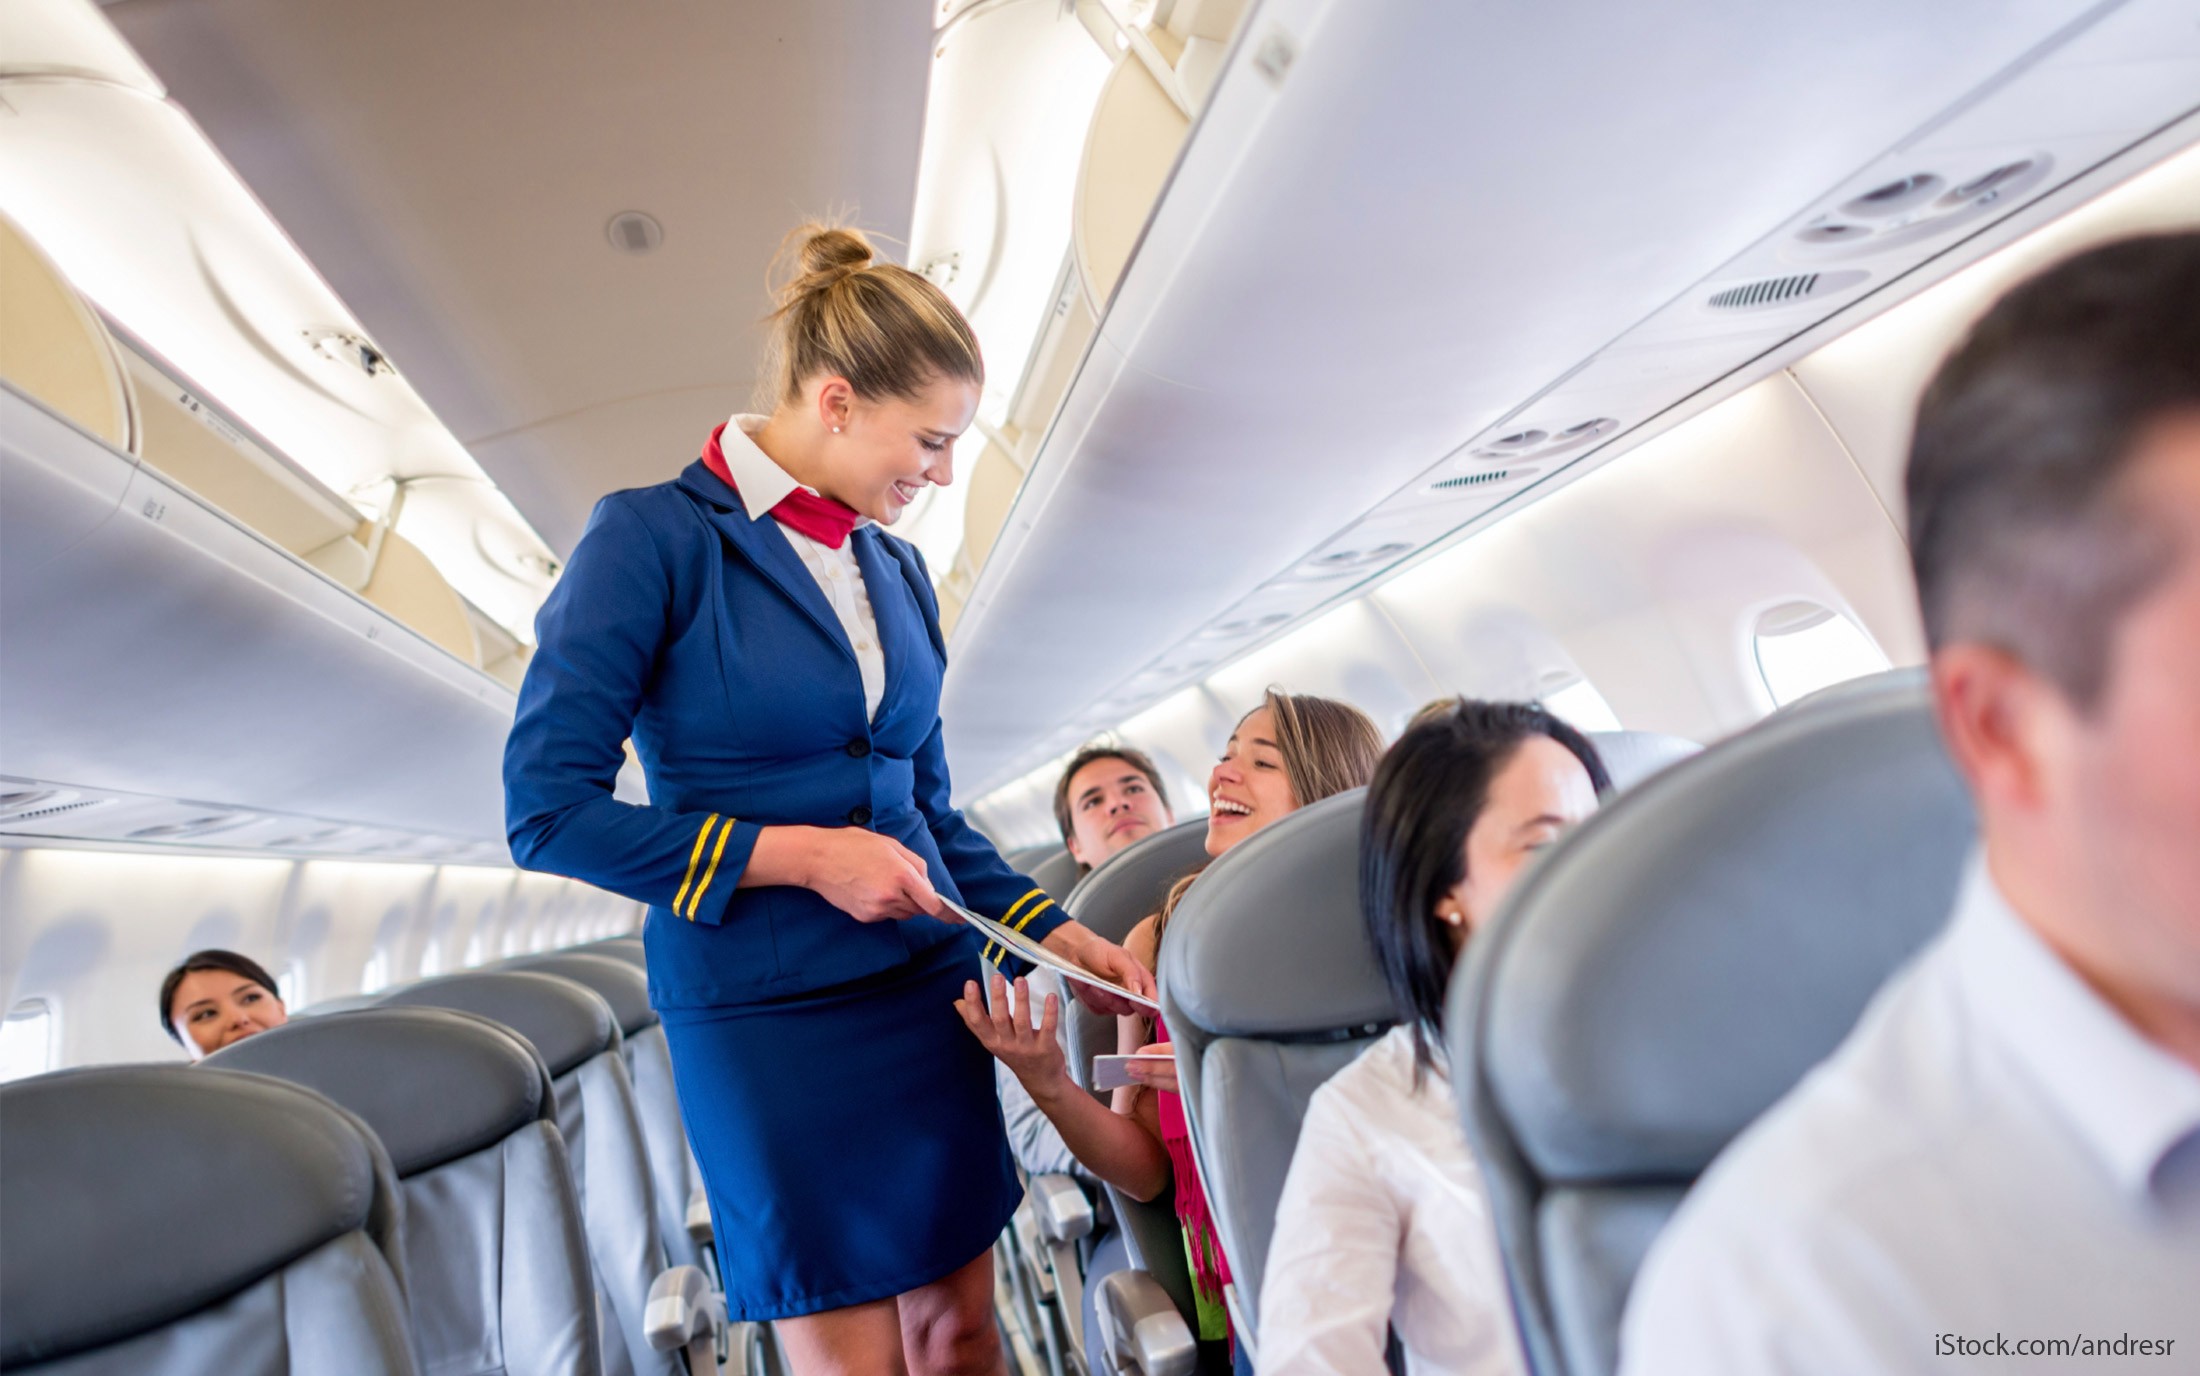 
Với mức lương khá cao và có nhiều cơ hội, trải nghiệm khám phá, nghề tiếp viên hàng không đang trở thành mơ ước của nhiều người.
